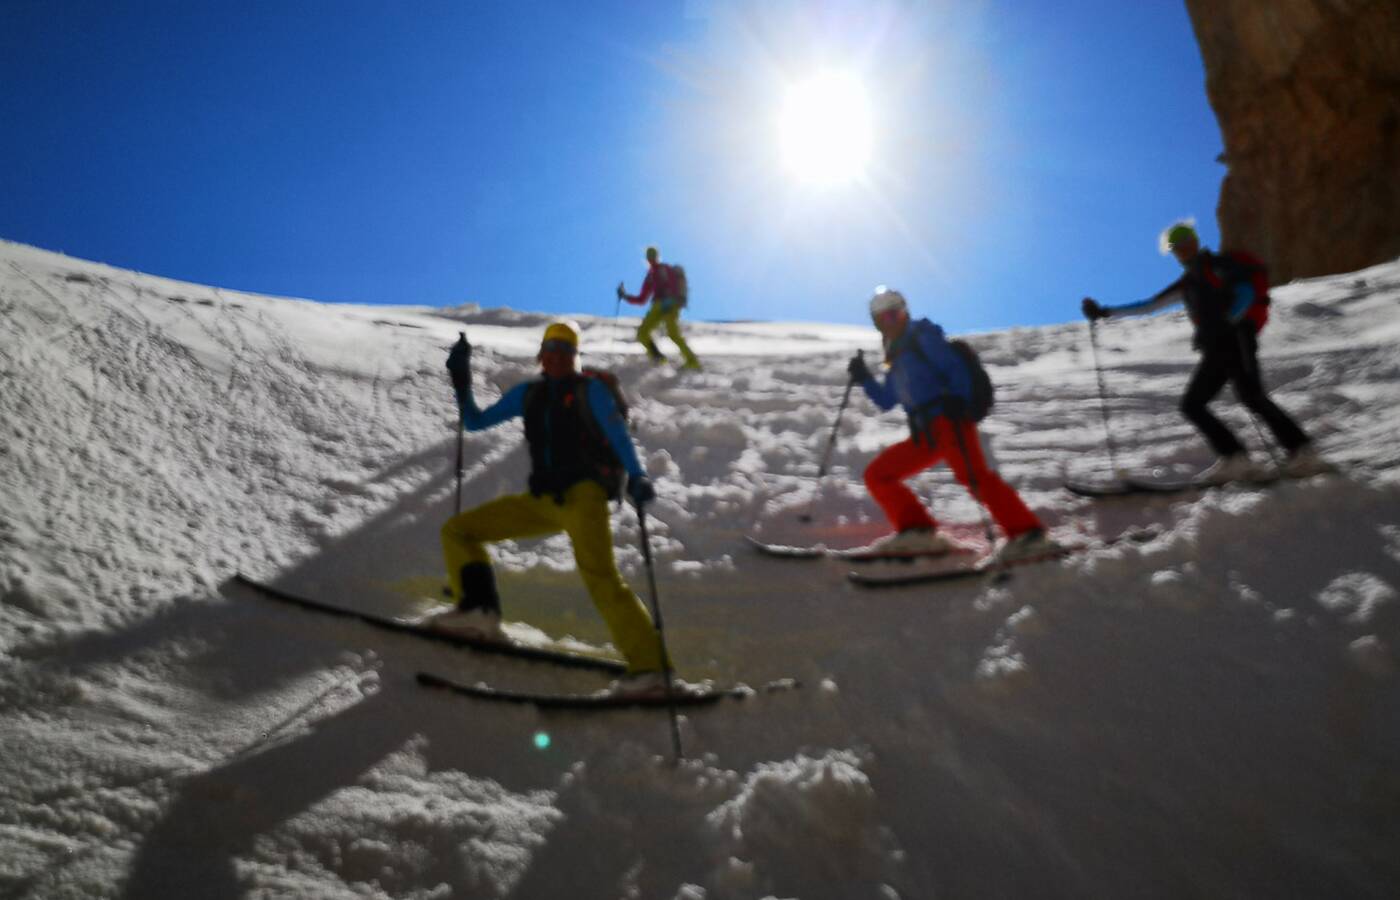 Ski mountaineering in Turkey